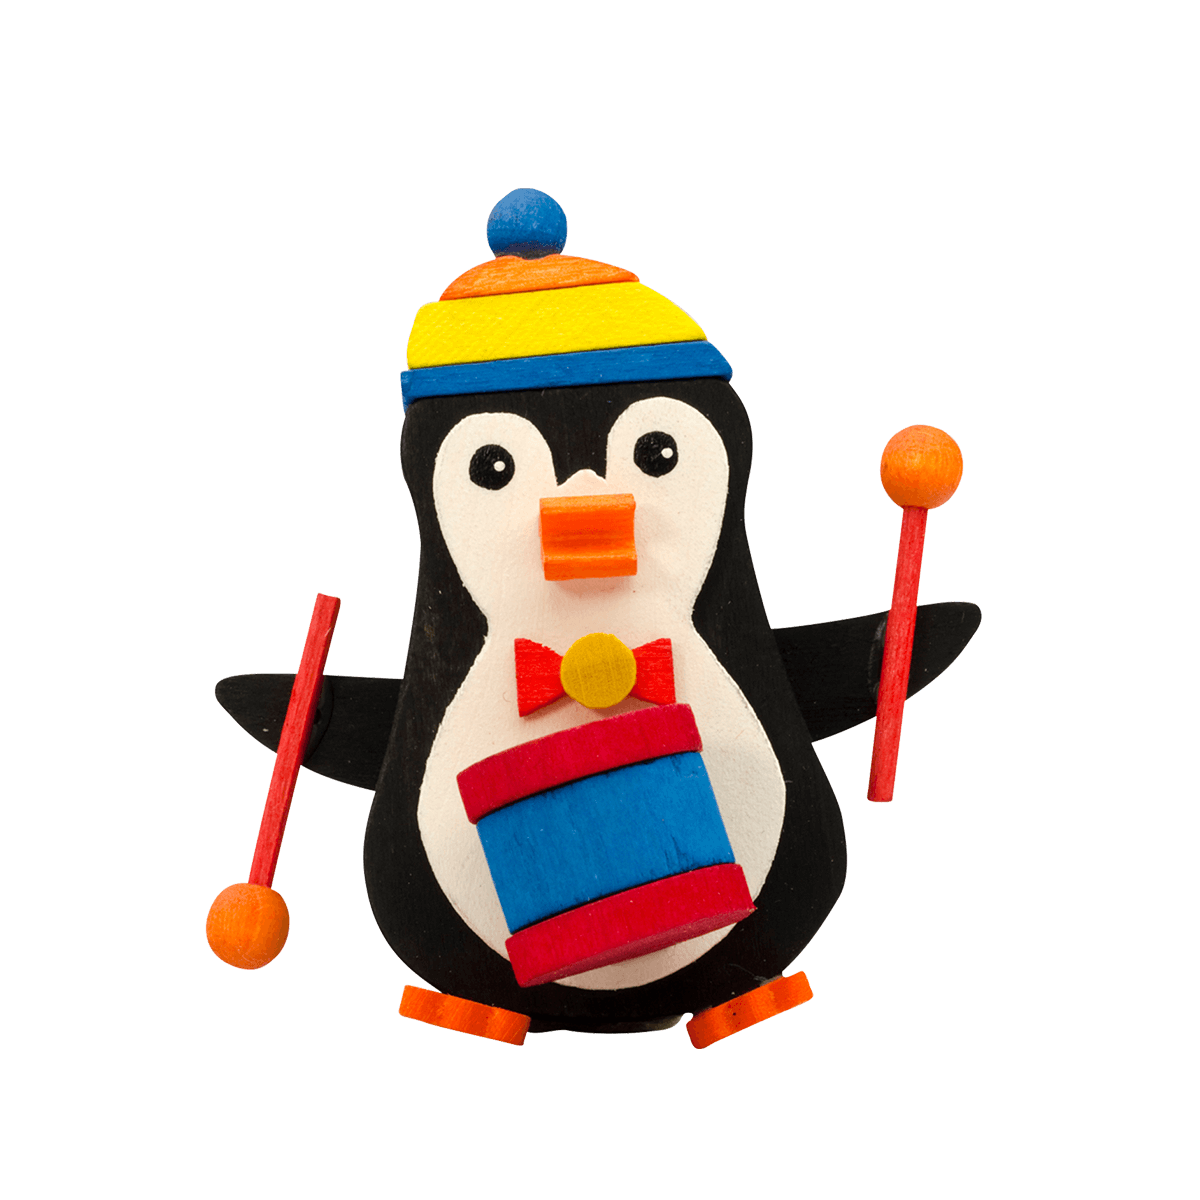 Penguin Ornament by Graupner Holzminiaturen